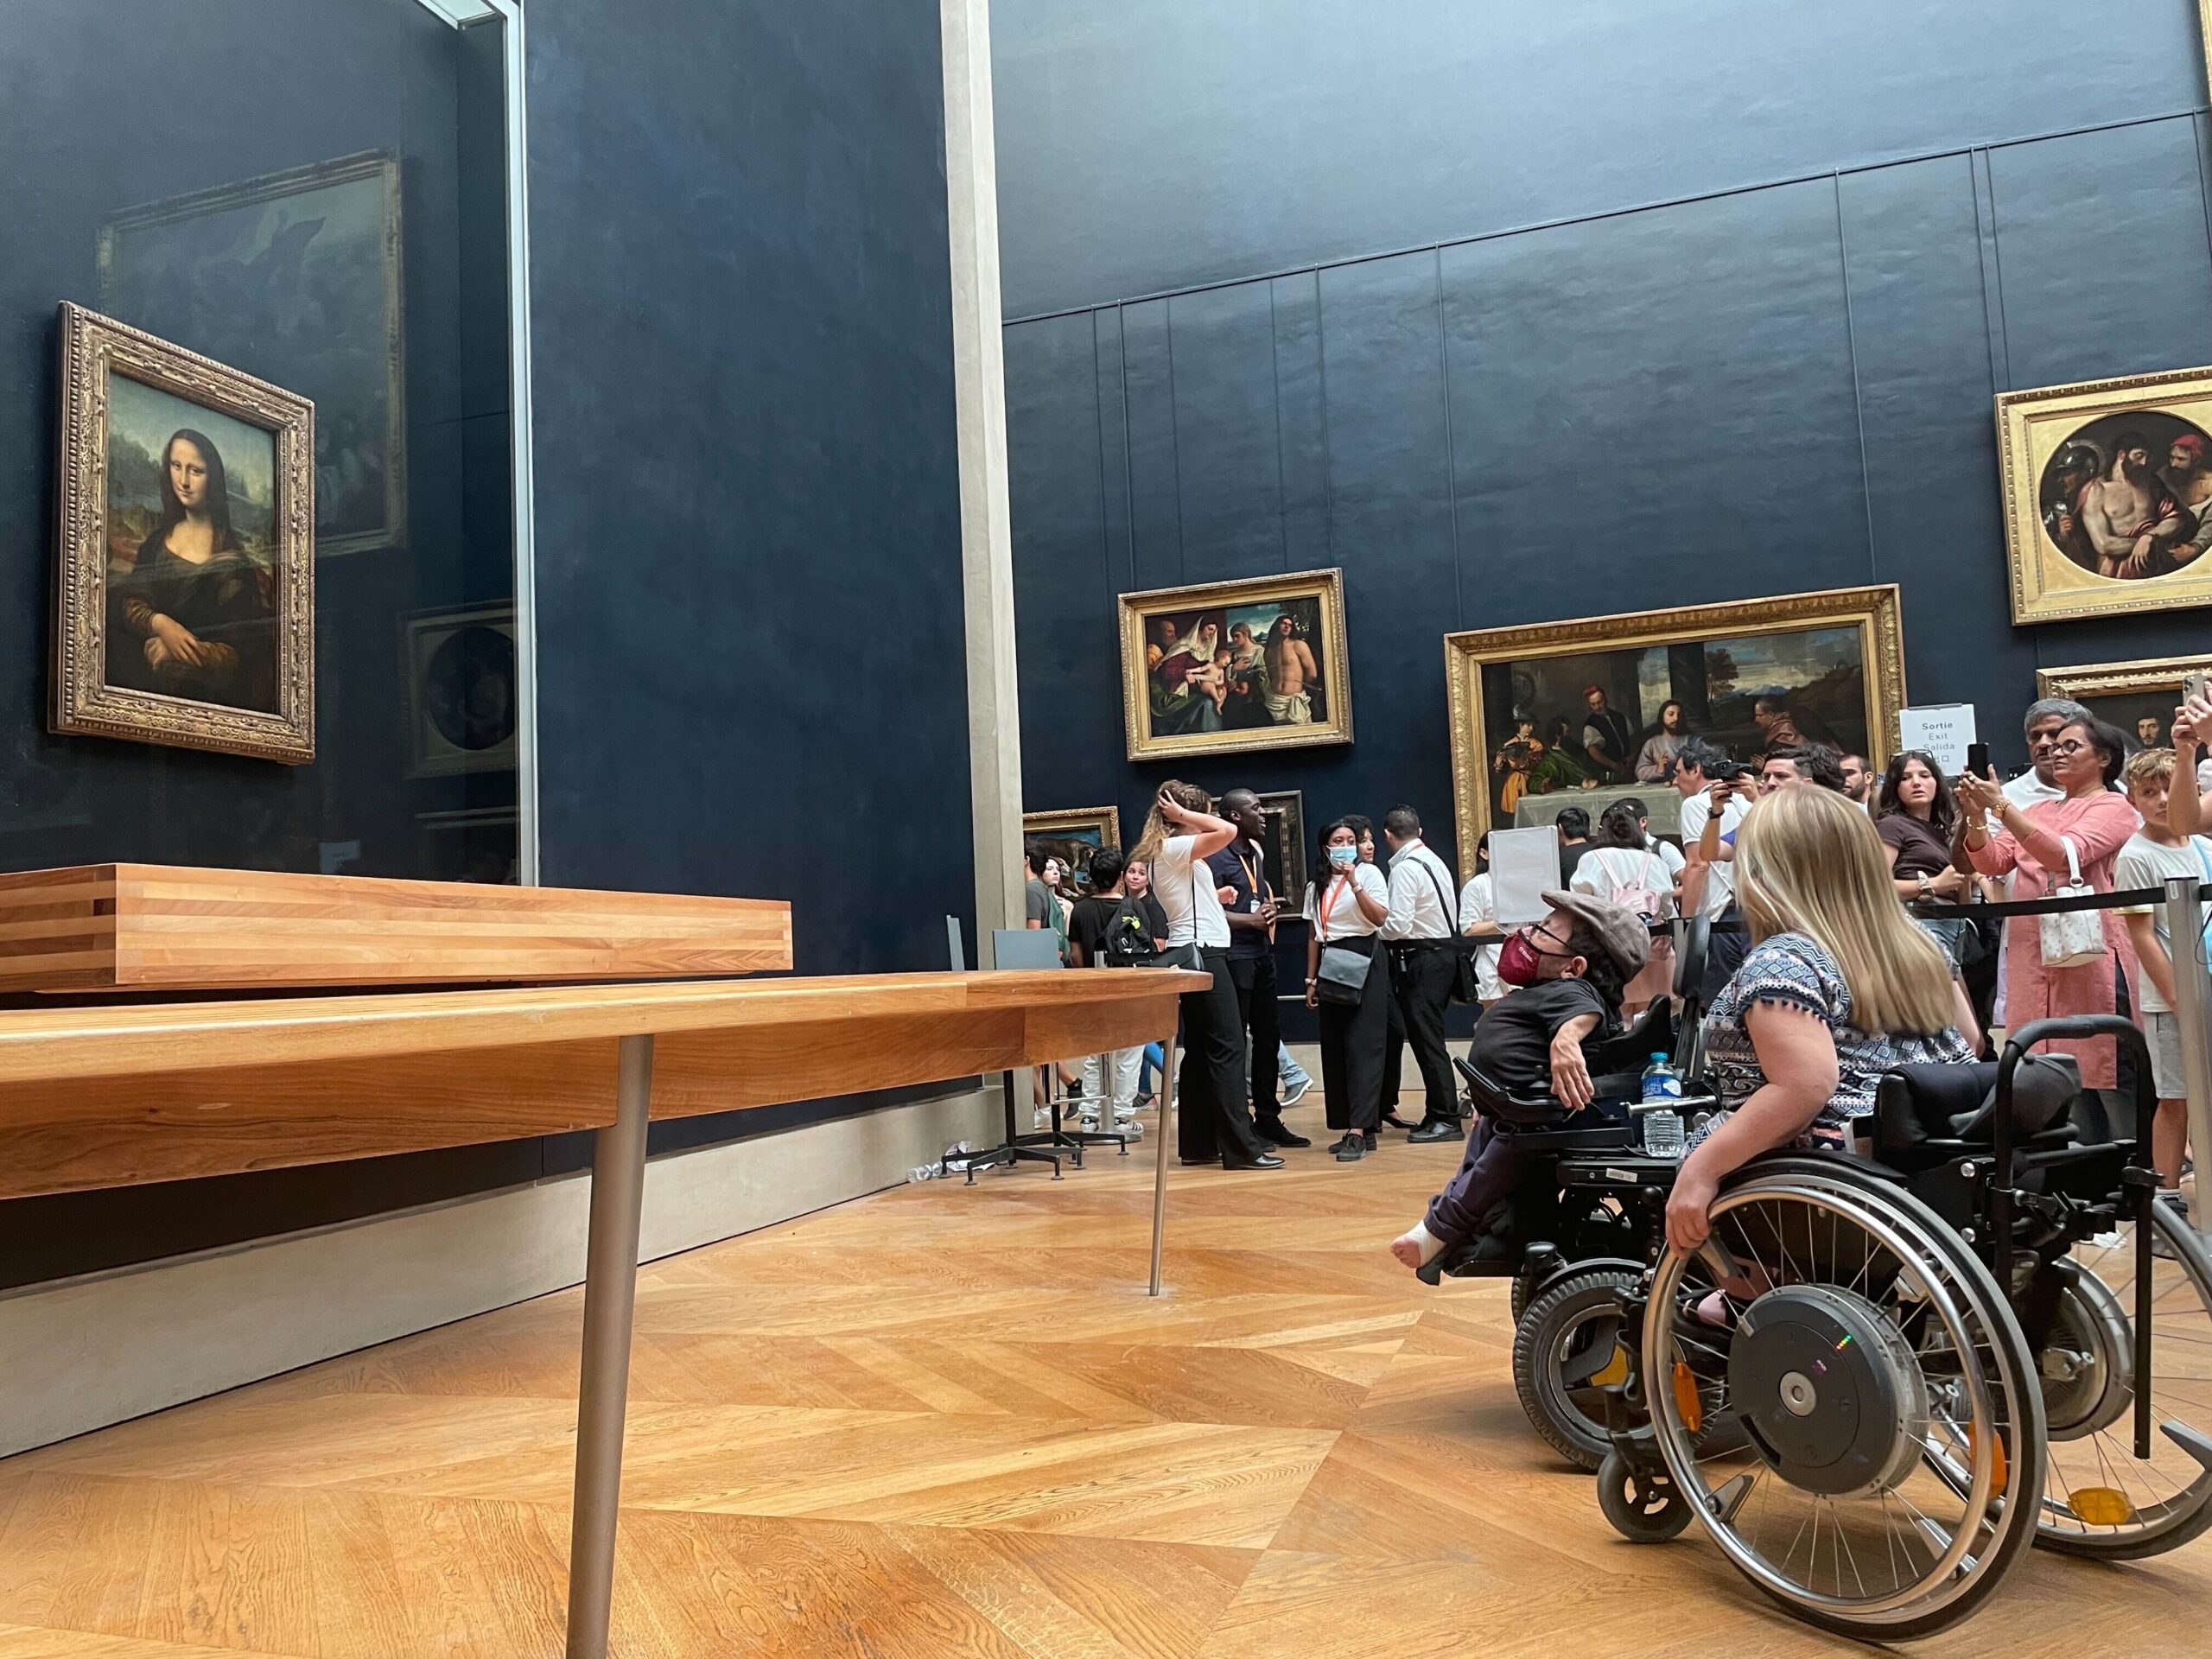 Raul im Rollstuhl vor der Mona Lisa im Louvre in Paris. Er ist vor der Absperrung, die die anderen Bucher*innen vom Gemälde trennt.